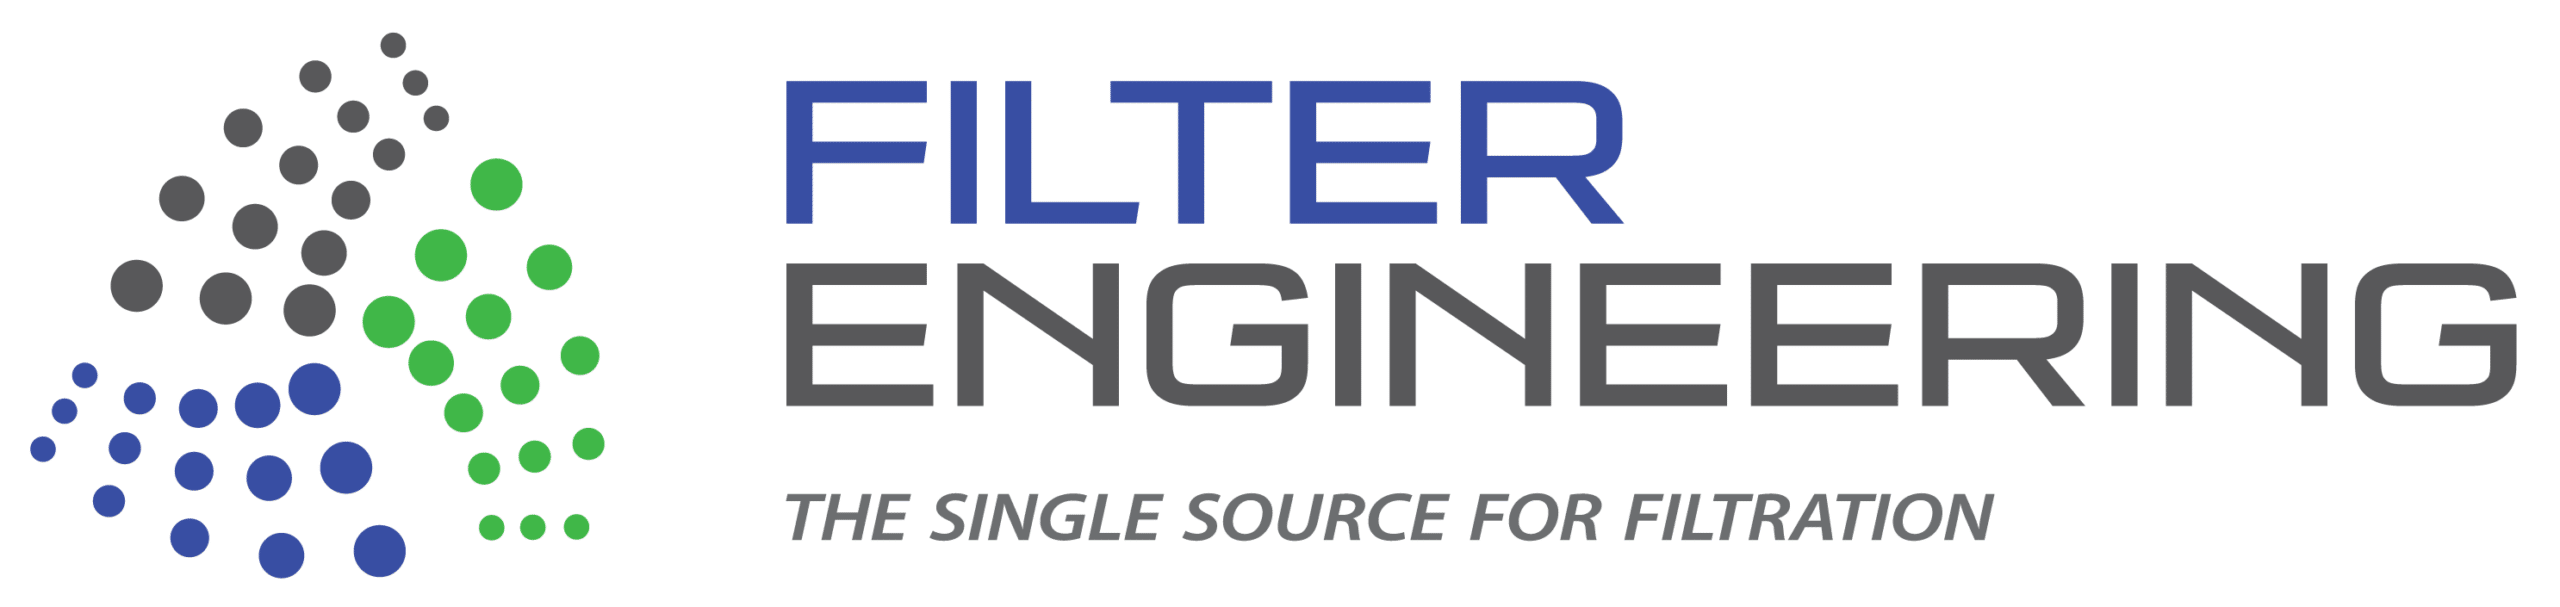 Filter Engineering_23tagline